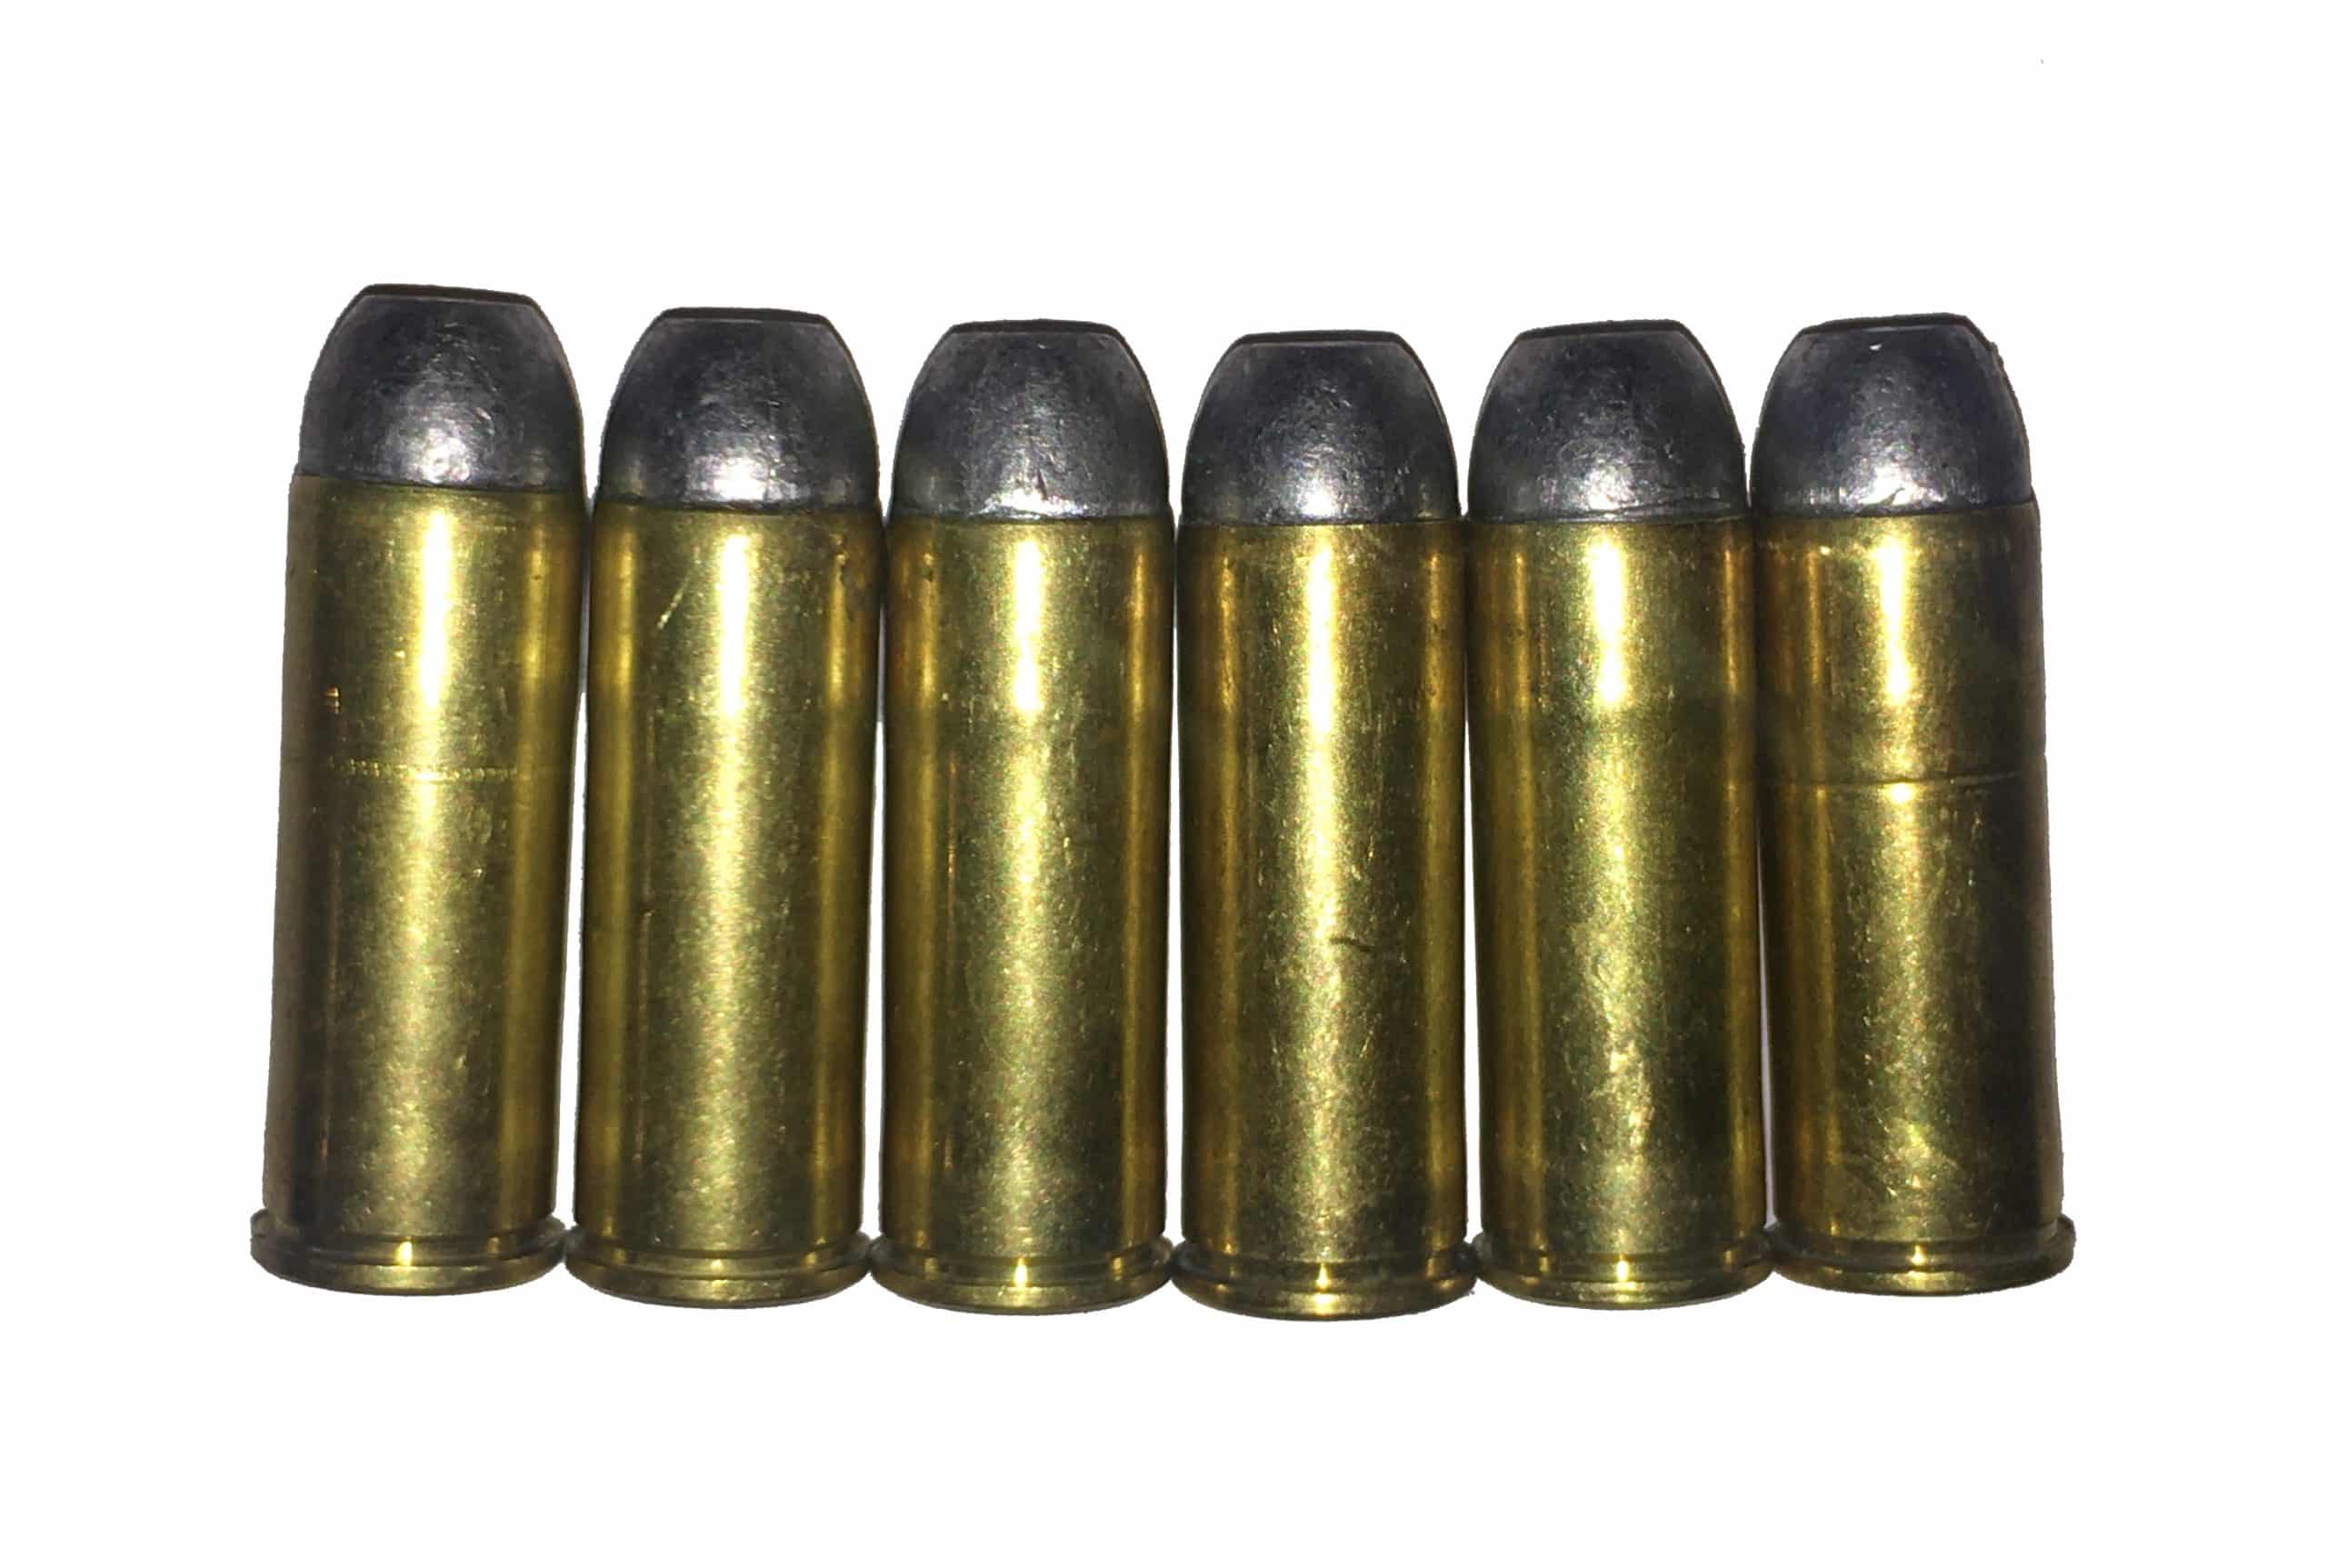 45 Long Colt Dummy Rounds Snap Caps Fake Bullets J&M Spec INERT